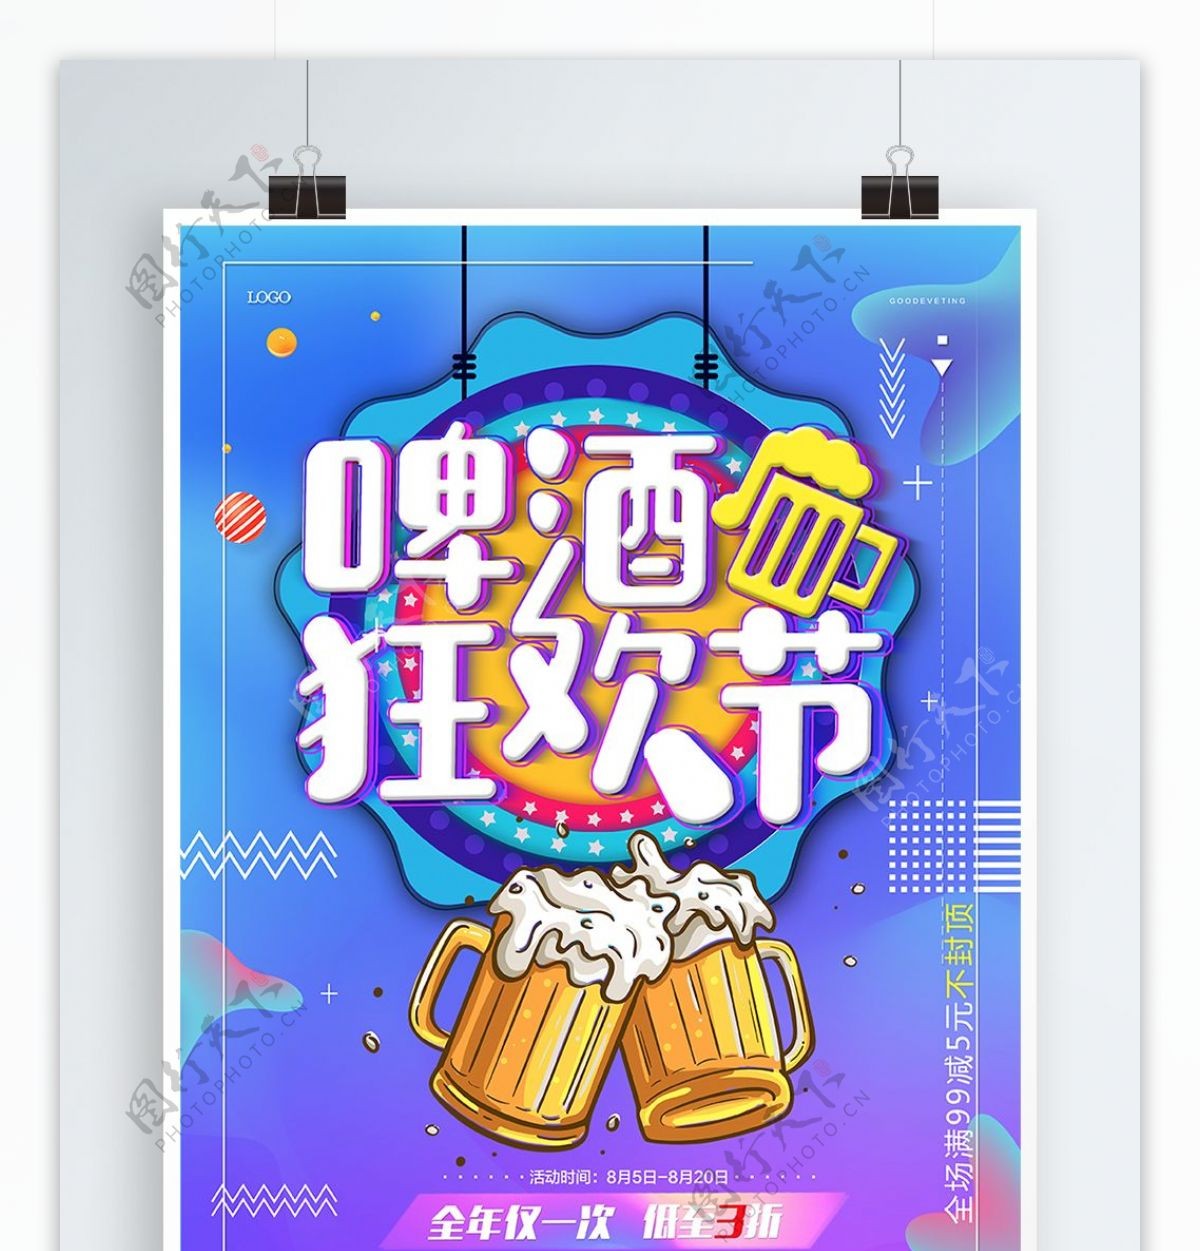 原创炫酷渐变啤酒节海报